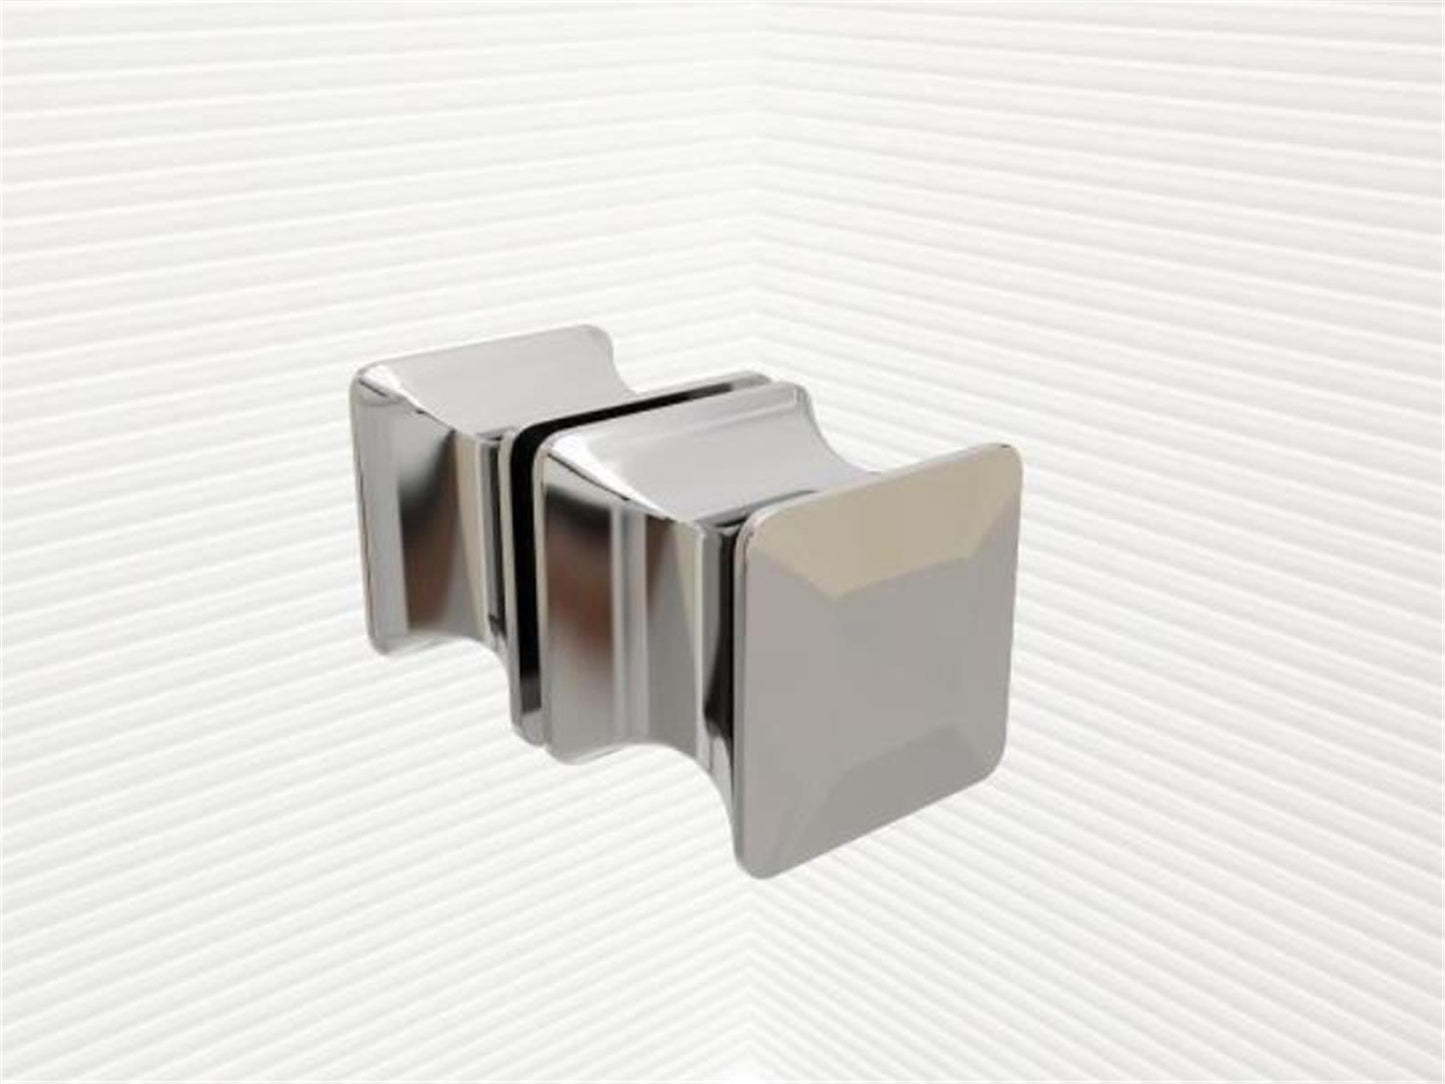 GlasHomeCenter - U-Duschkabine "Asuka" (100x80x180cm) - 8mm - Eckduschkabine - Duschabtrennung - ohne Duschtasse